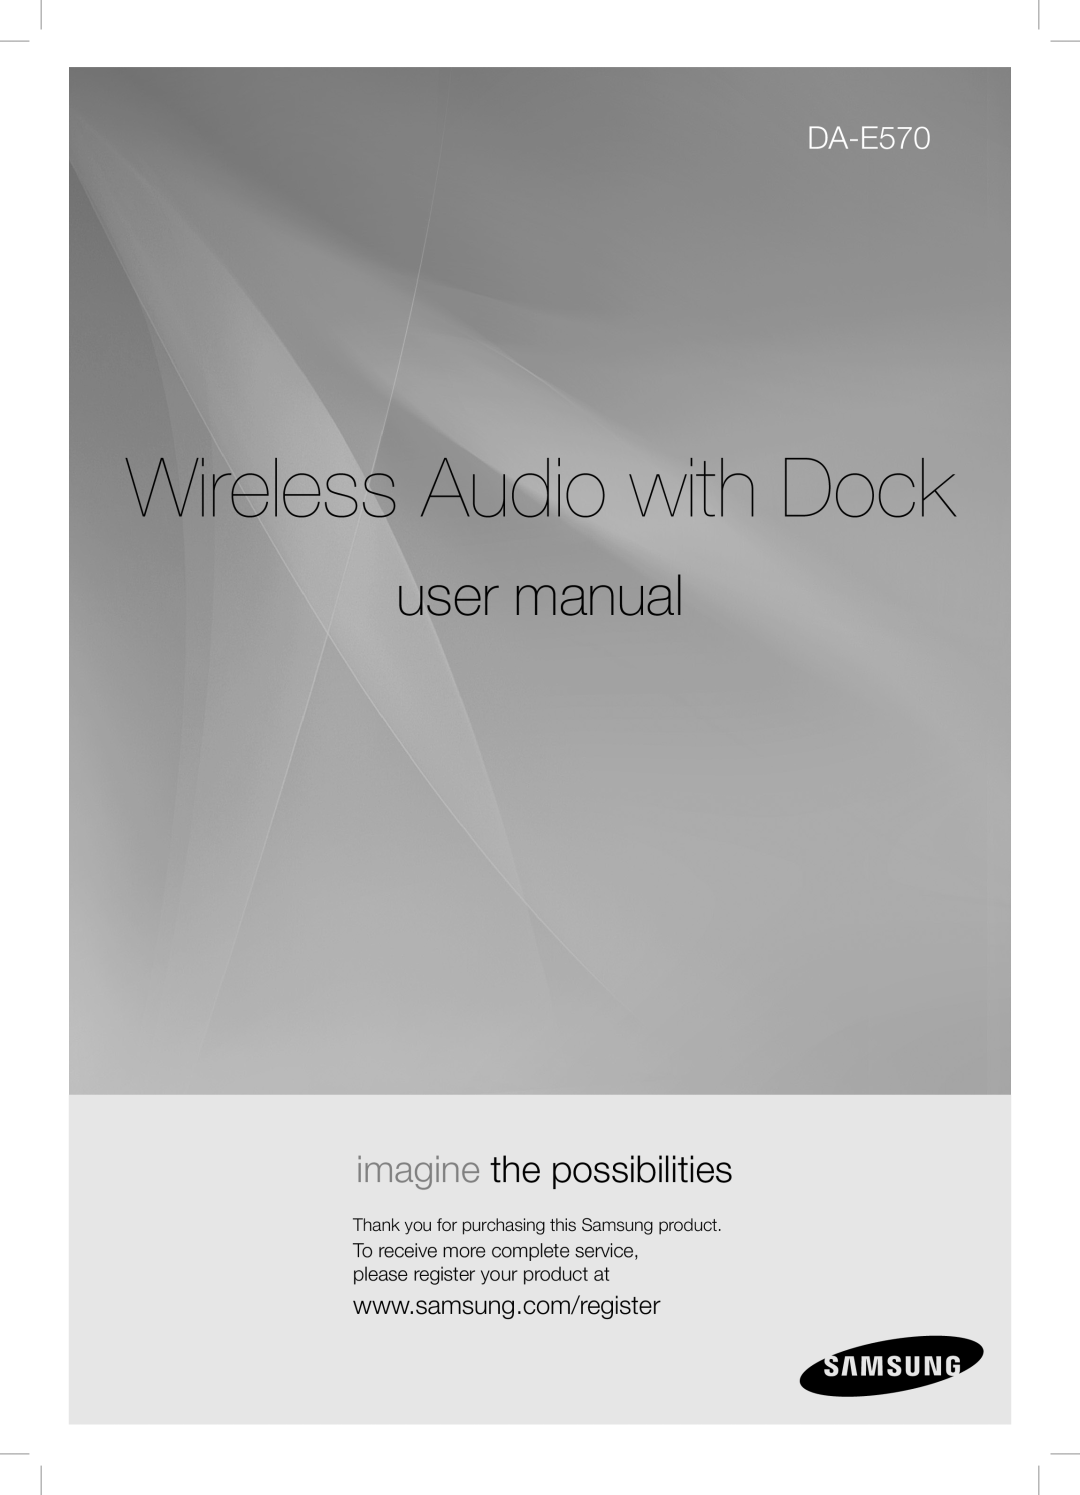 Samsung DA-E570 user manual Wireless Audio with Dock, imagine the possibilities 